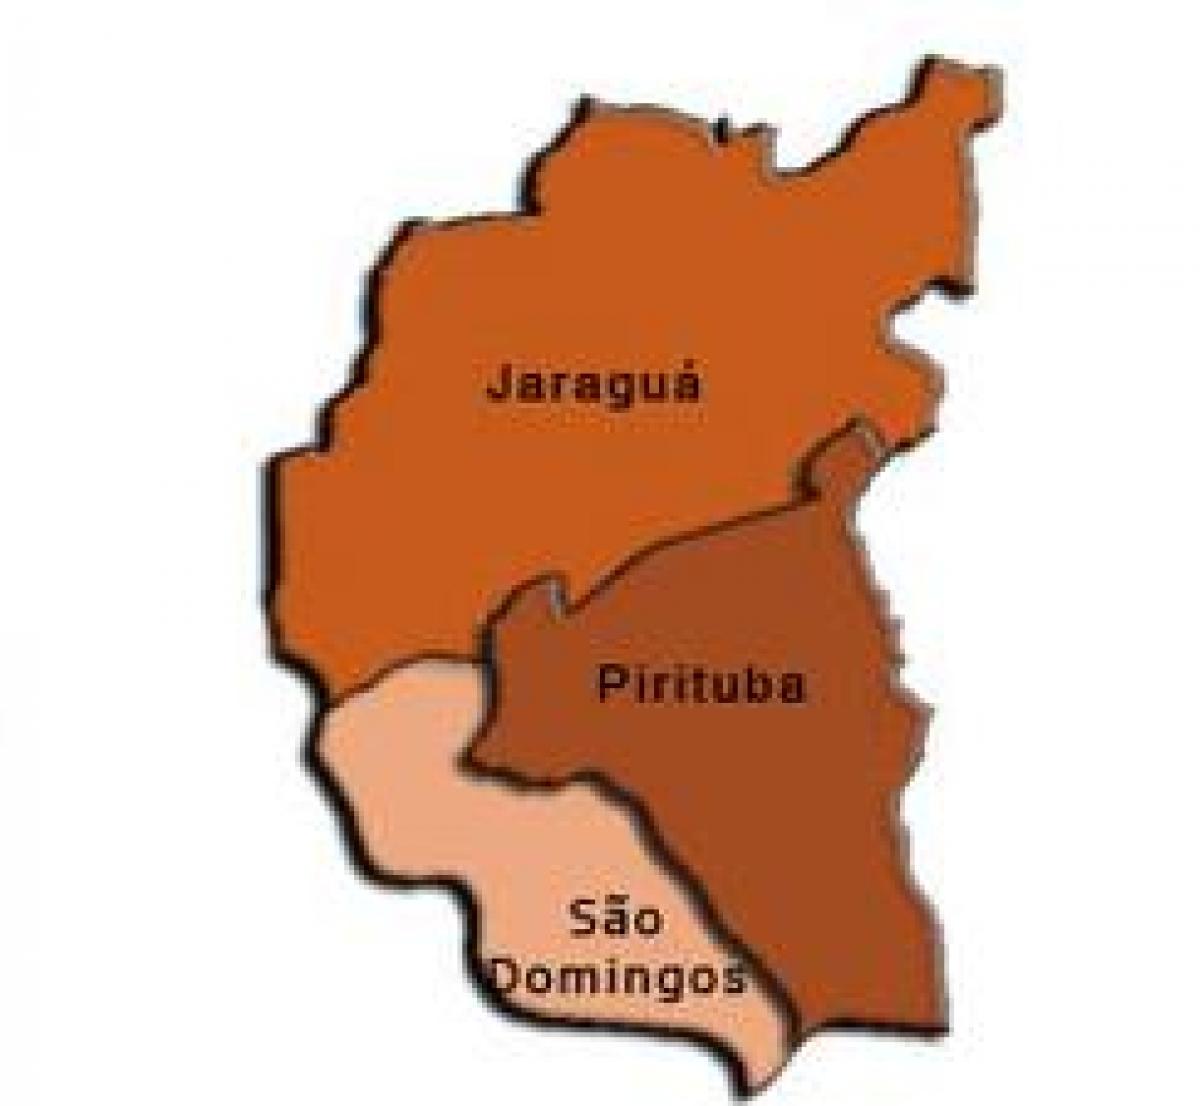 Karte Pirituba-Jaraguá sub-prefecture